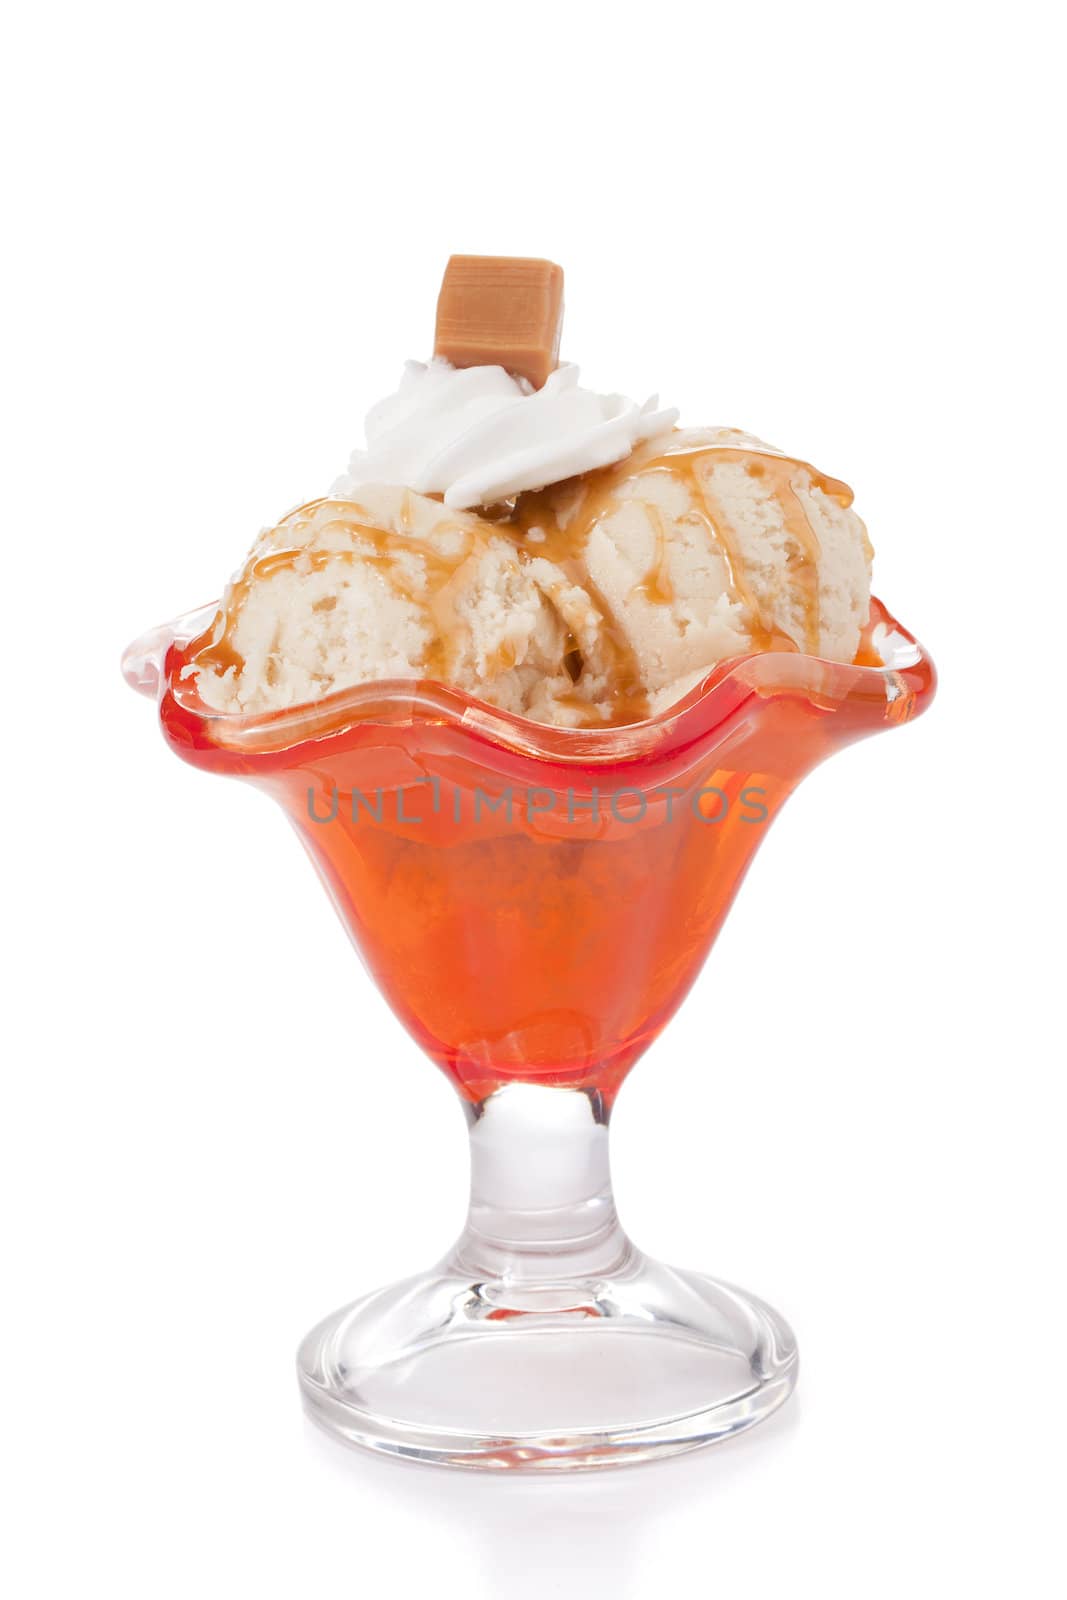 dulce de leche ice cream by kozzi